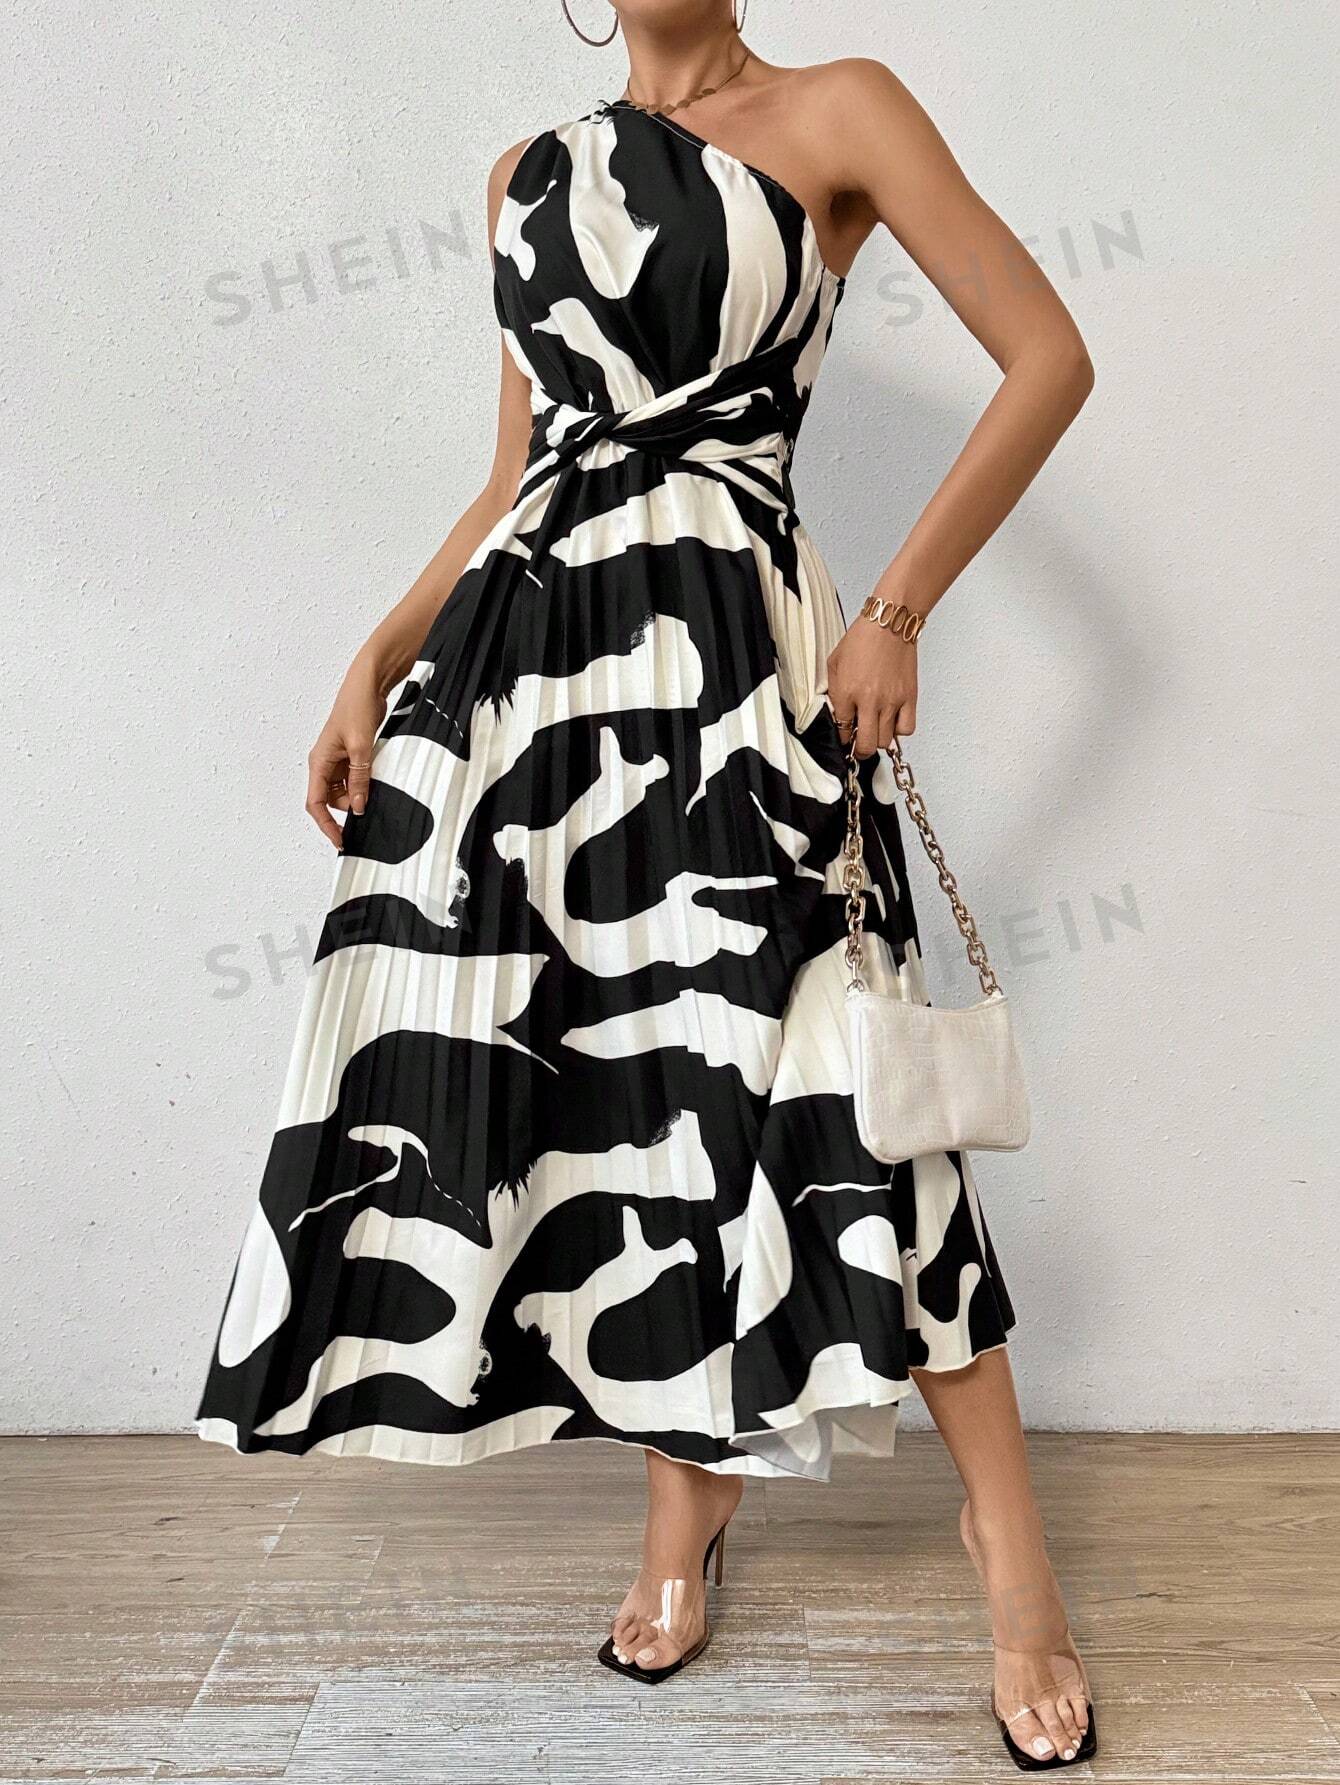 SHEIN Privé Женское платье без рукавов на одно плечо с принтом и плиссированным подолом, черное и белое женское белое платье в стиле лолита с розовым подолом 60 см